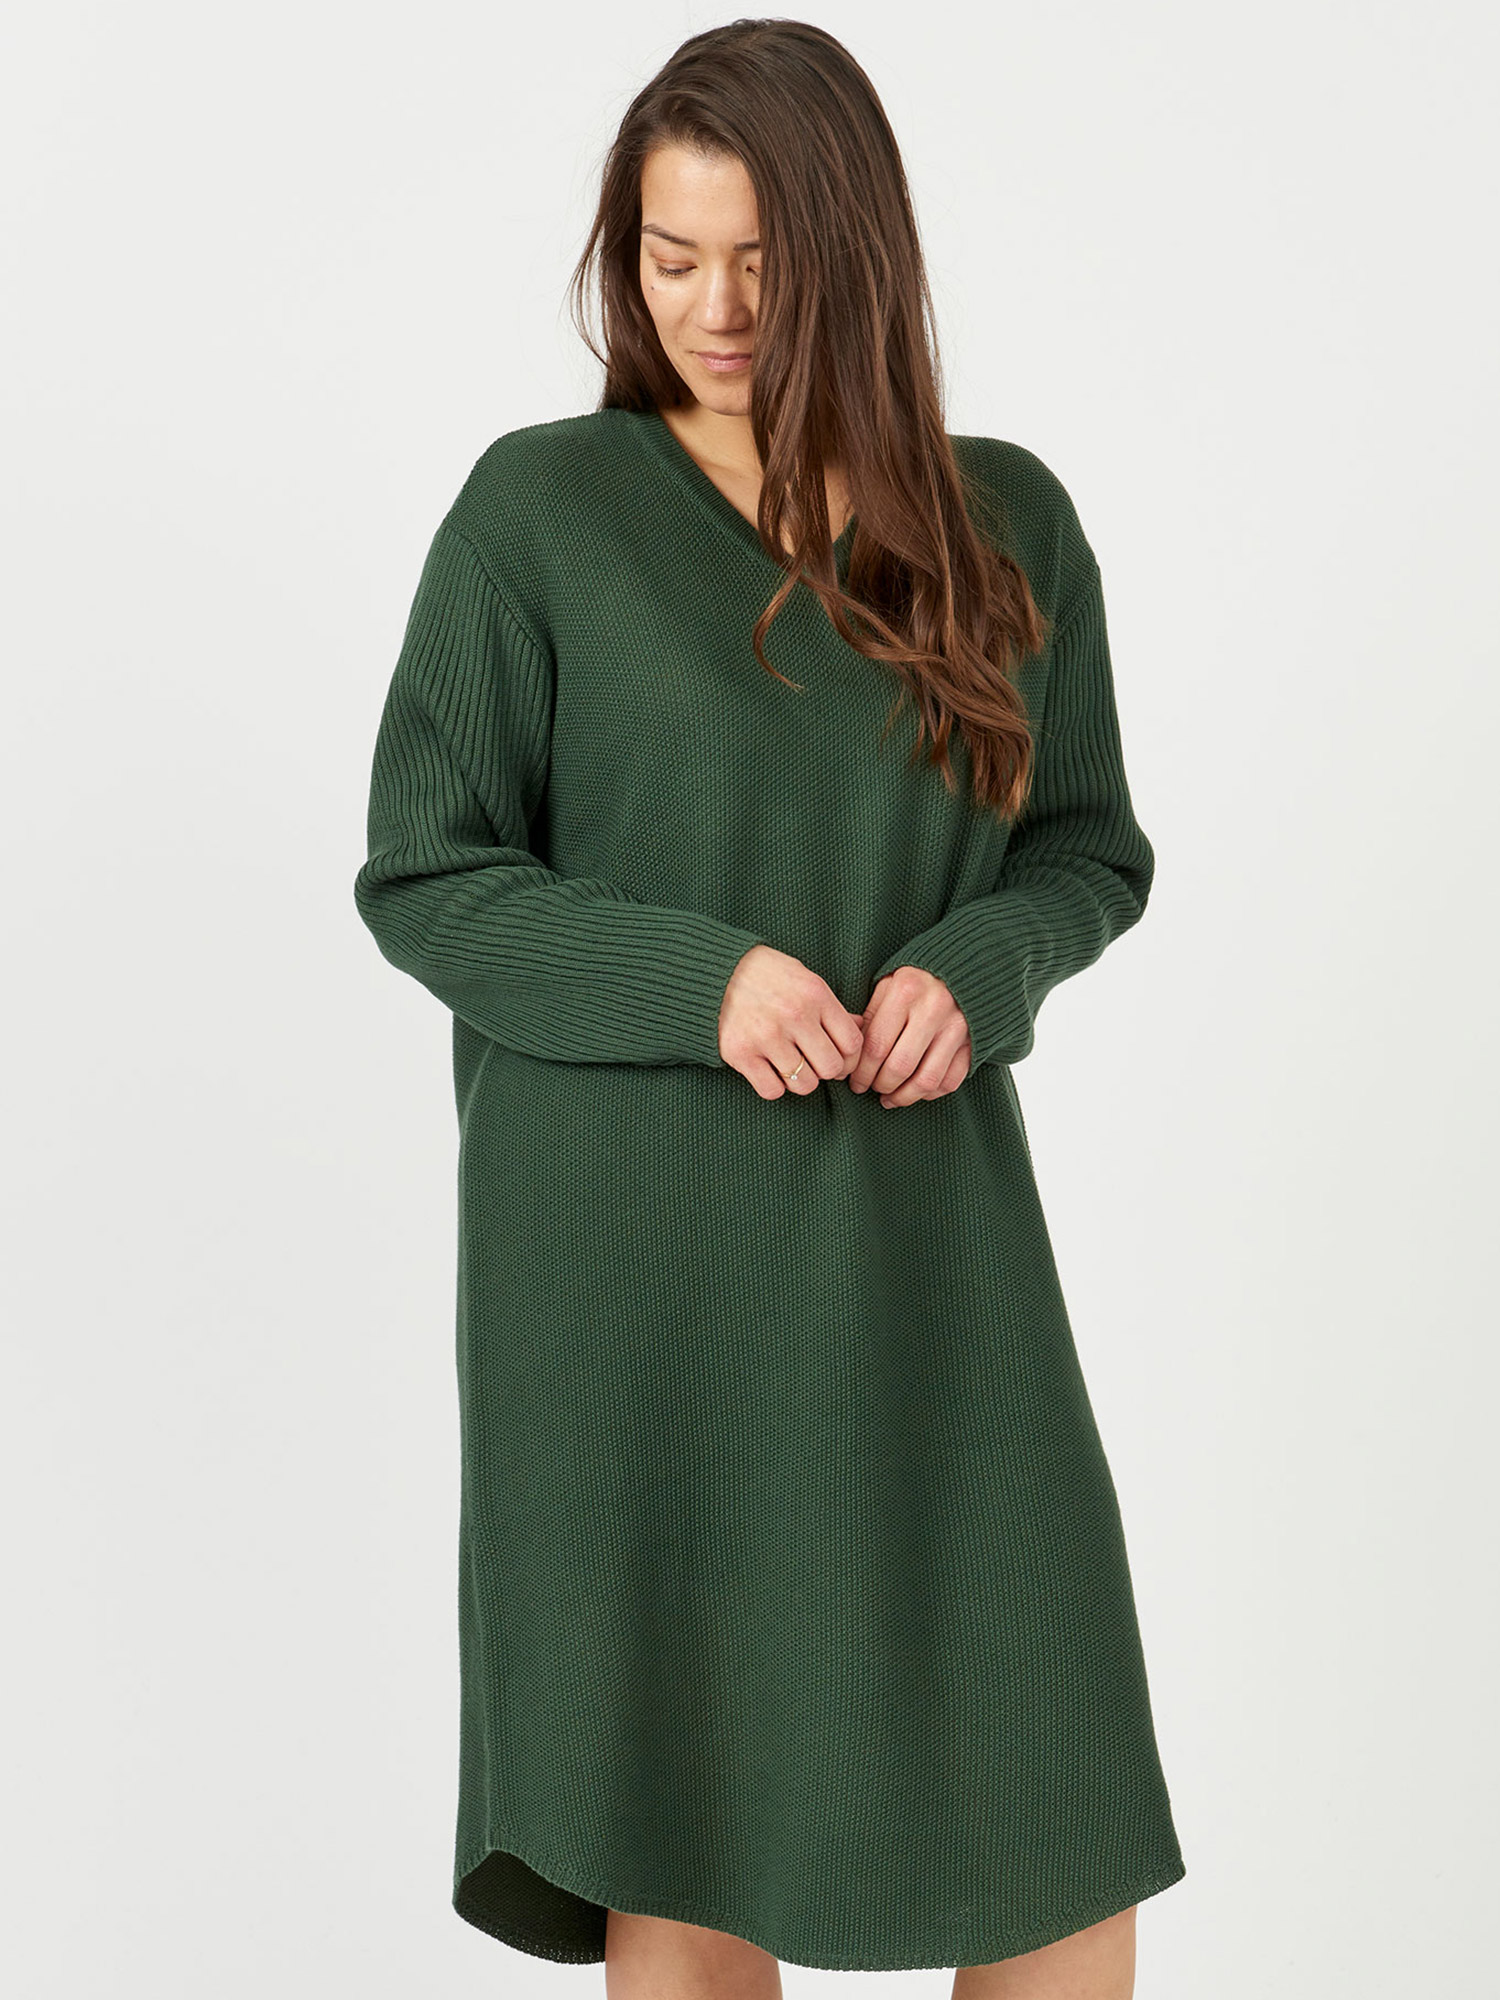 Glendale - mørkegrønn strikket kjole fra Aprico